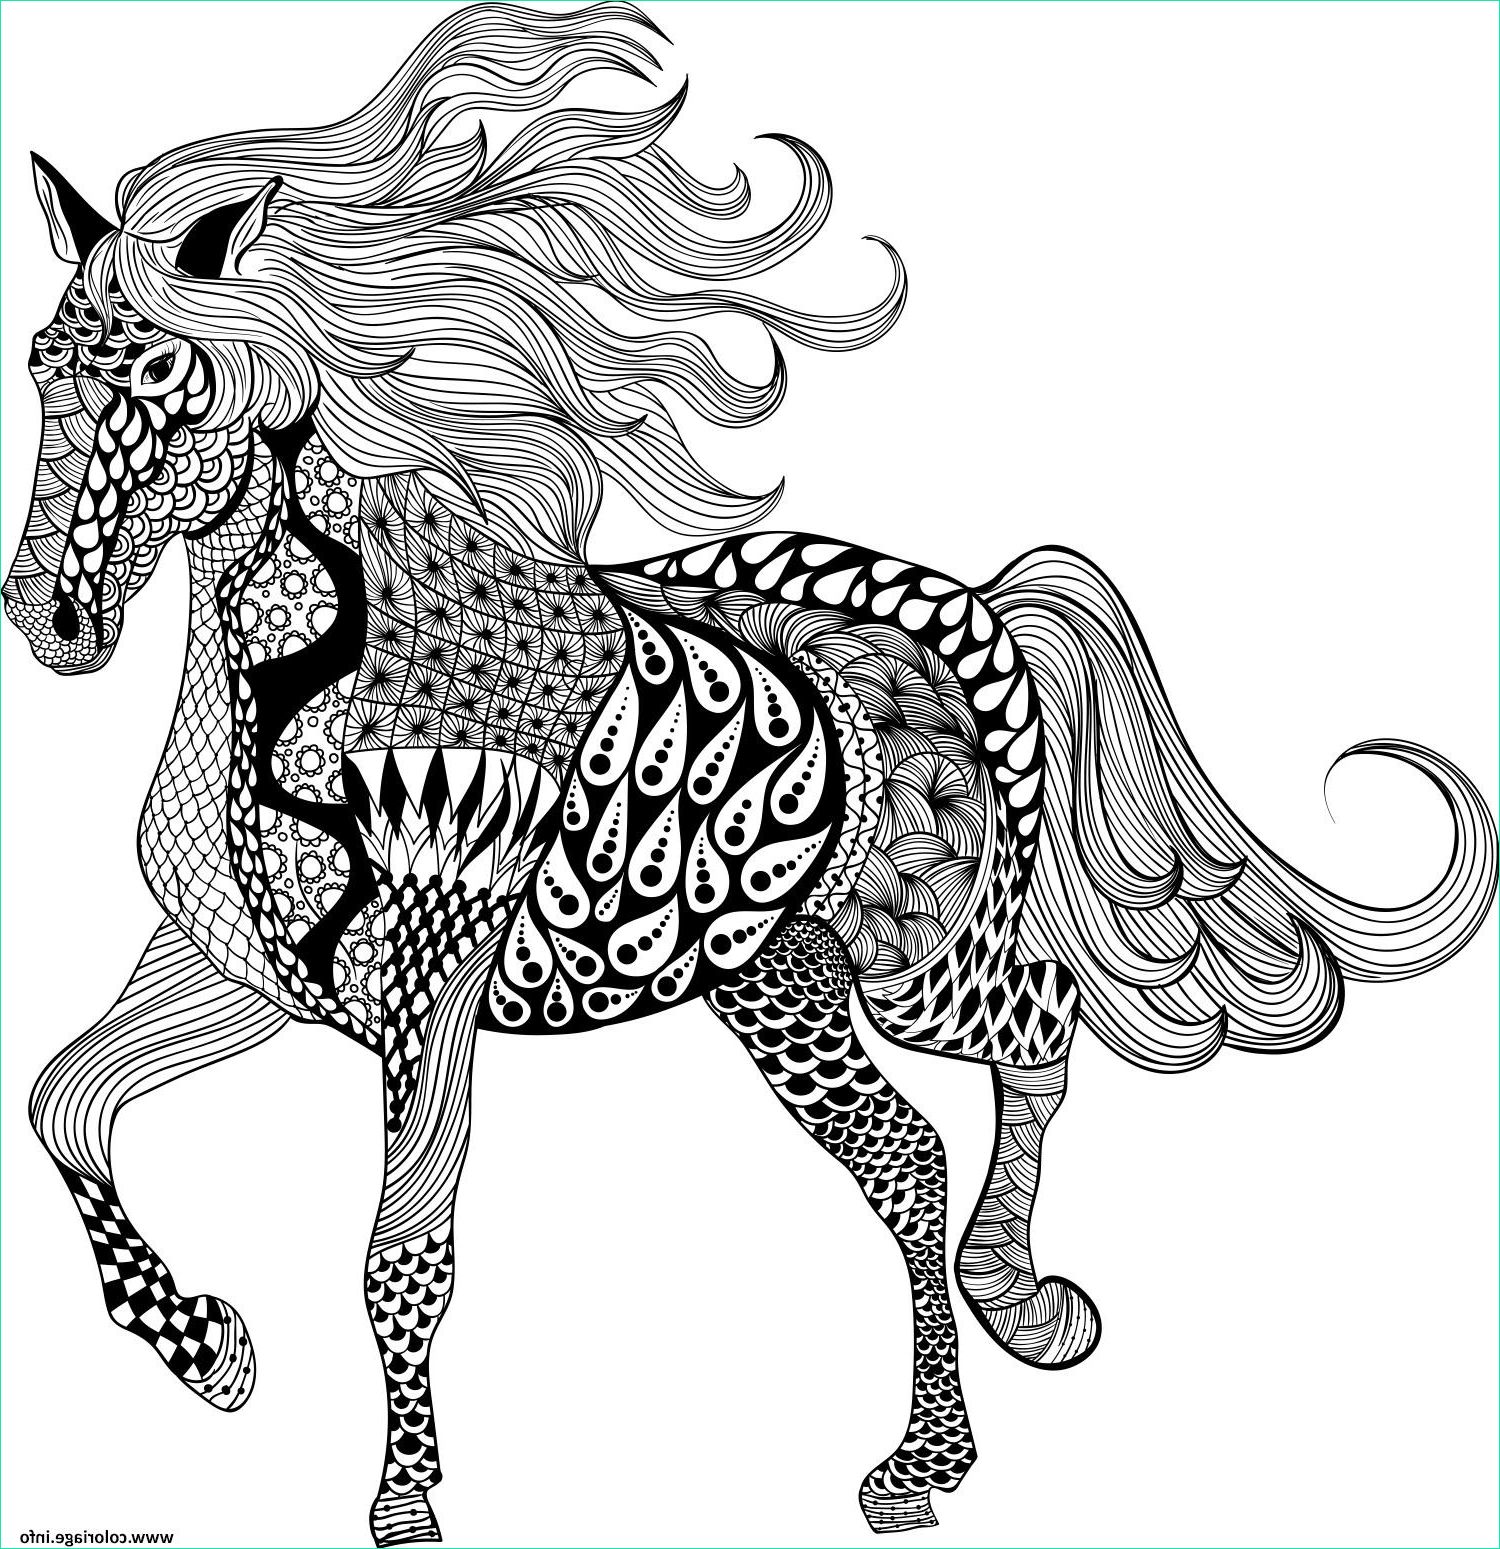 Coloriage Chevaux à Imprimer Luxe Image Coloriage Adulte Mandala Horse Dessin